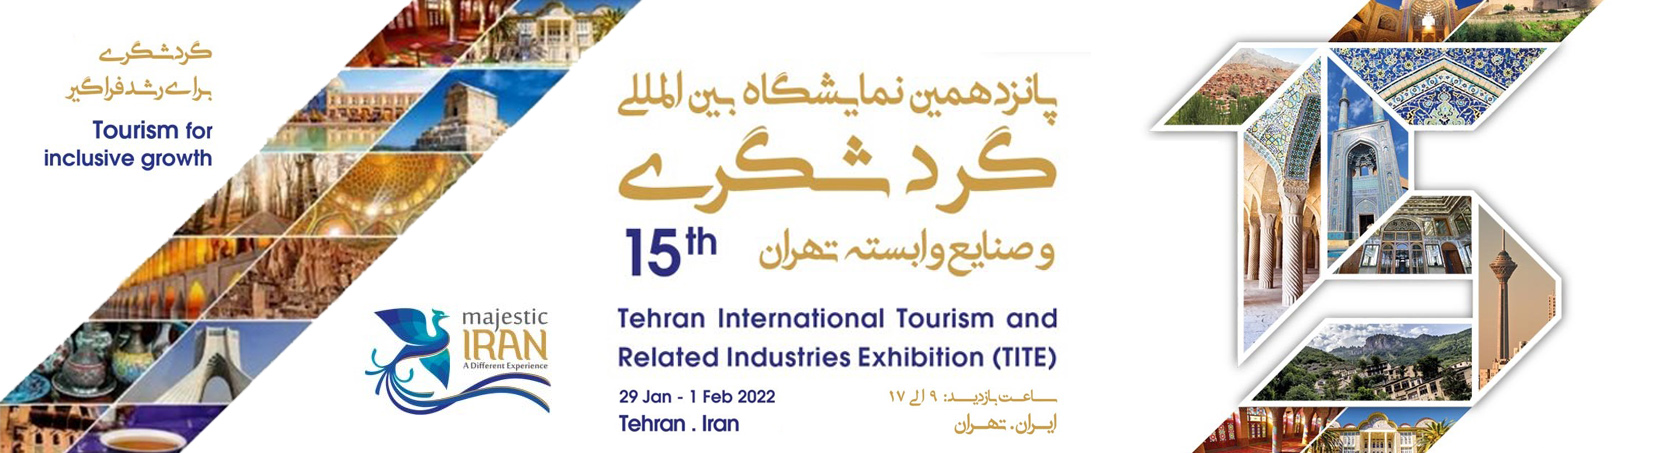 La 15ème exposition internationale du tourisme de Téhéran a été ouverte